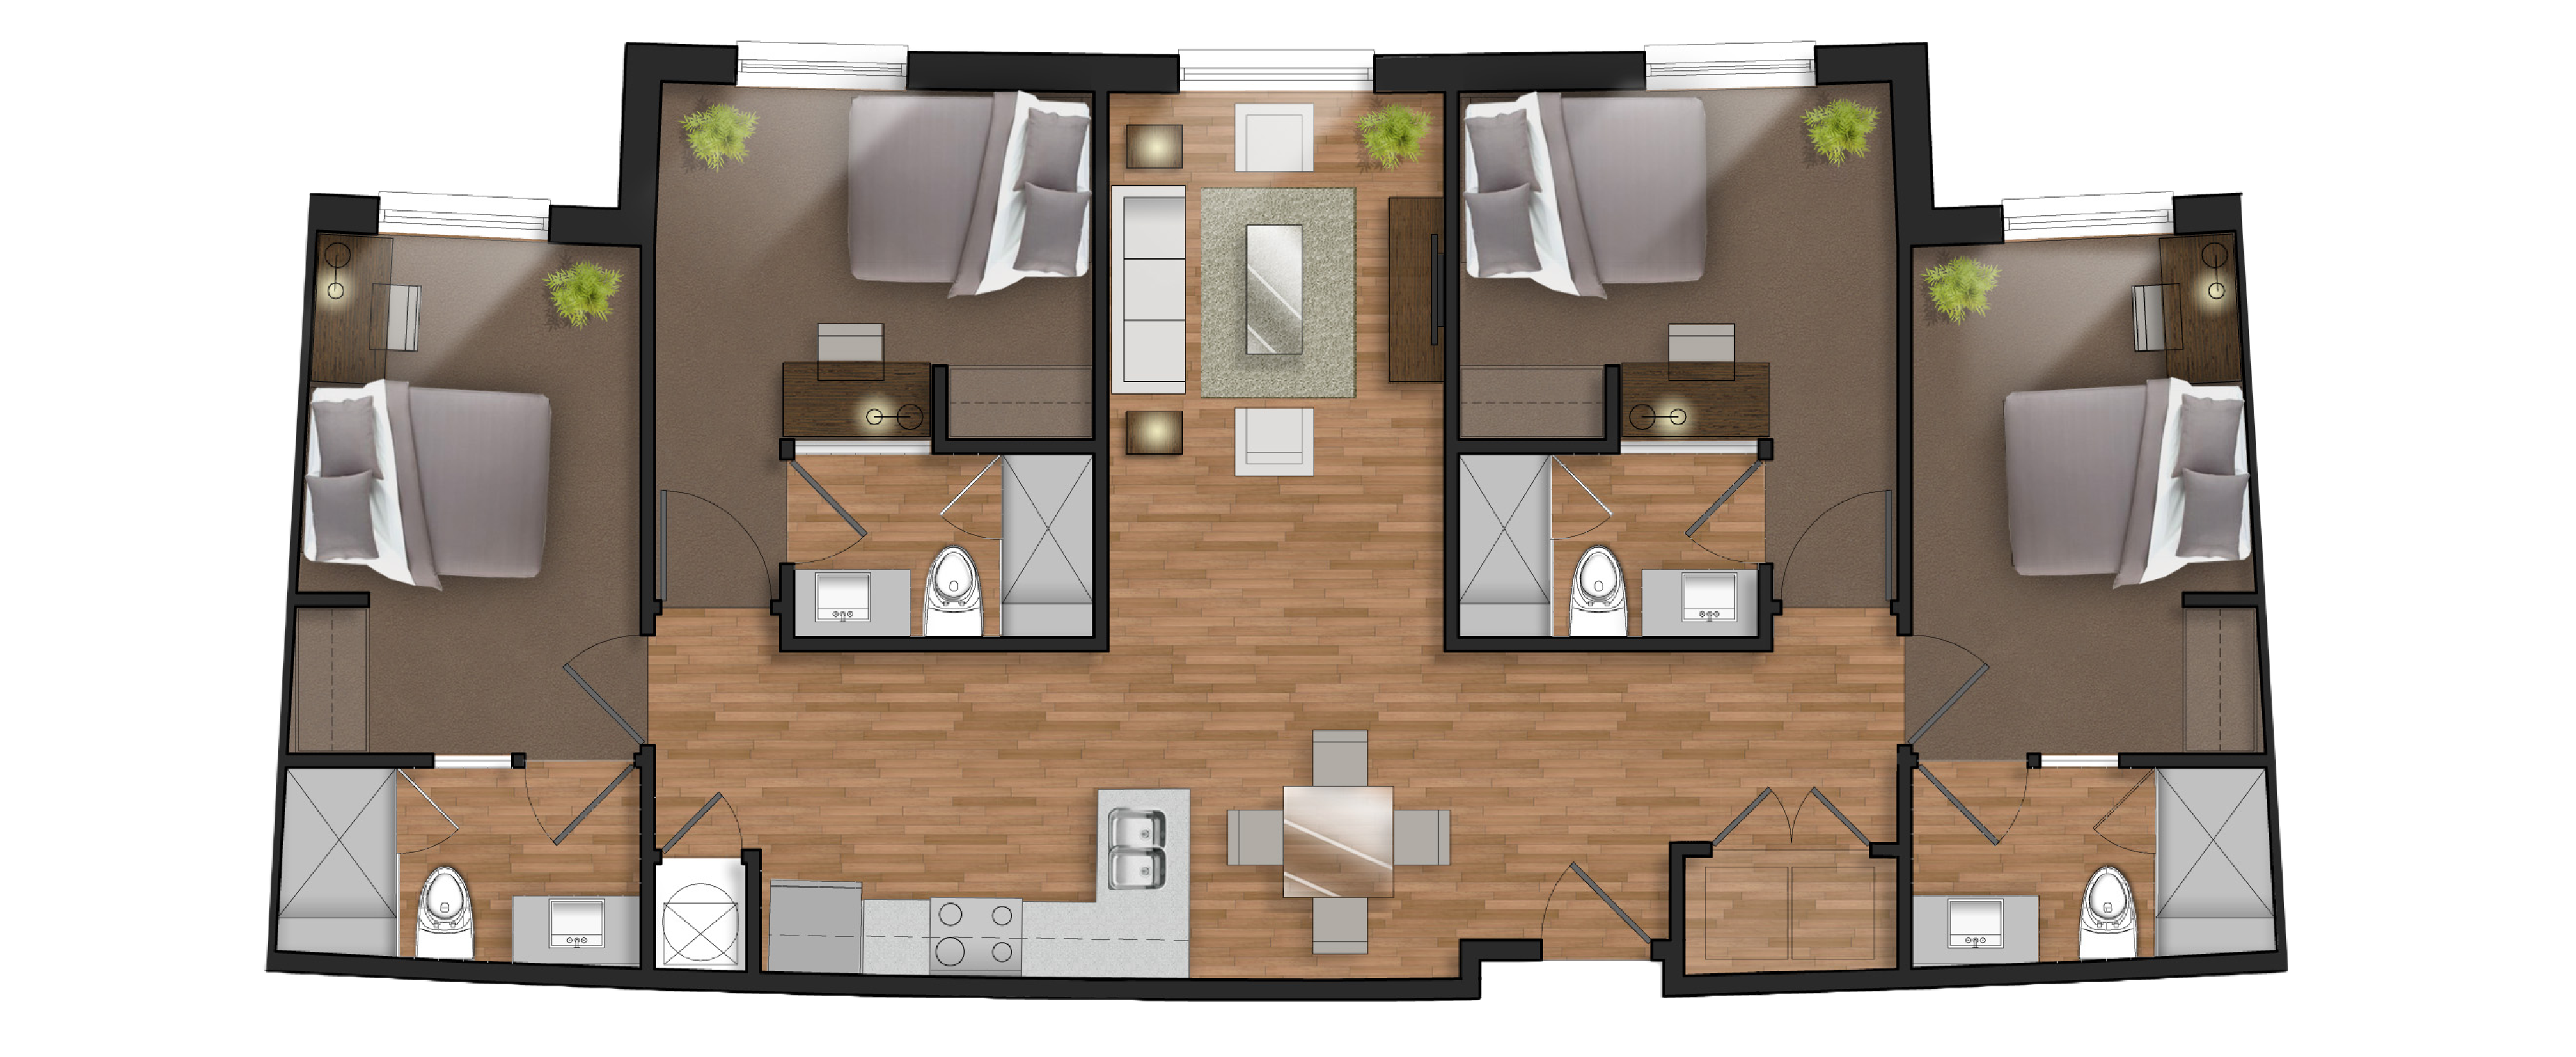 student 4 bedroom floor plan